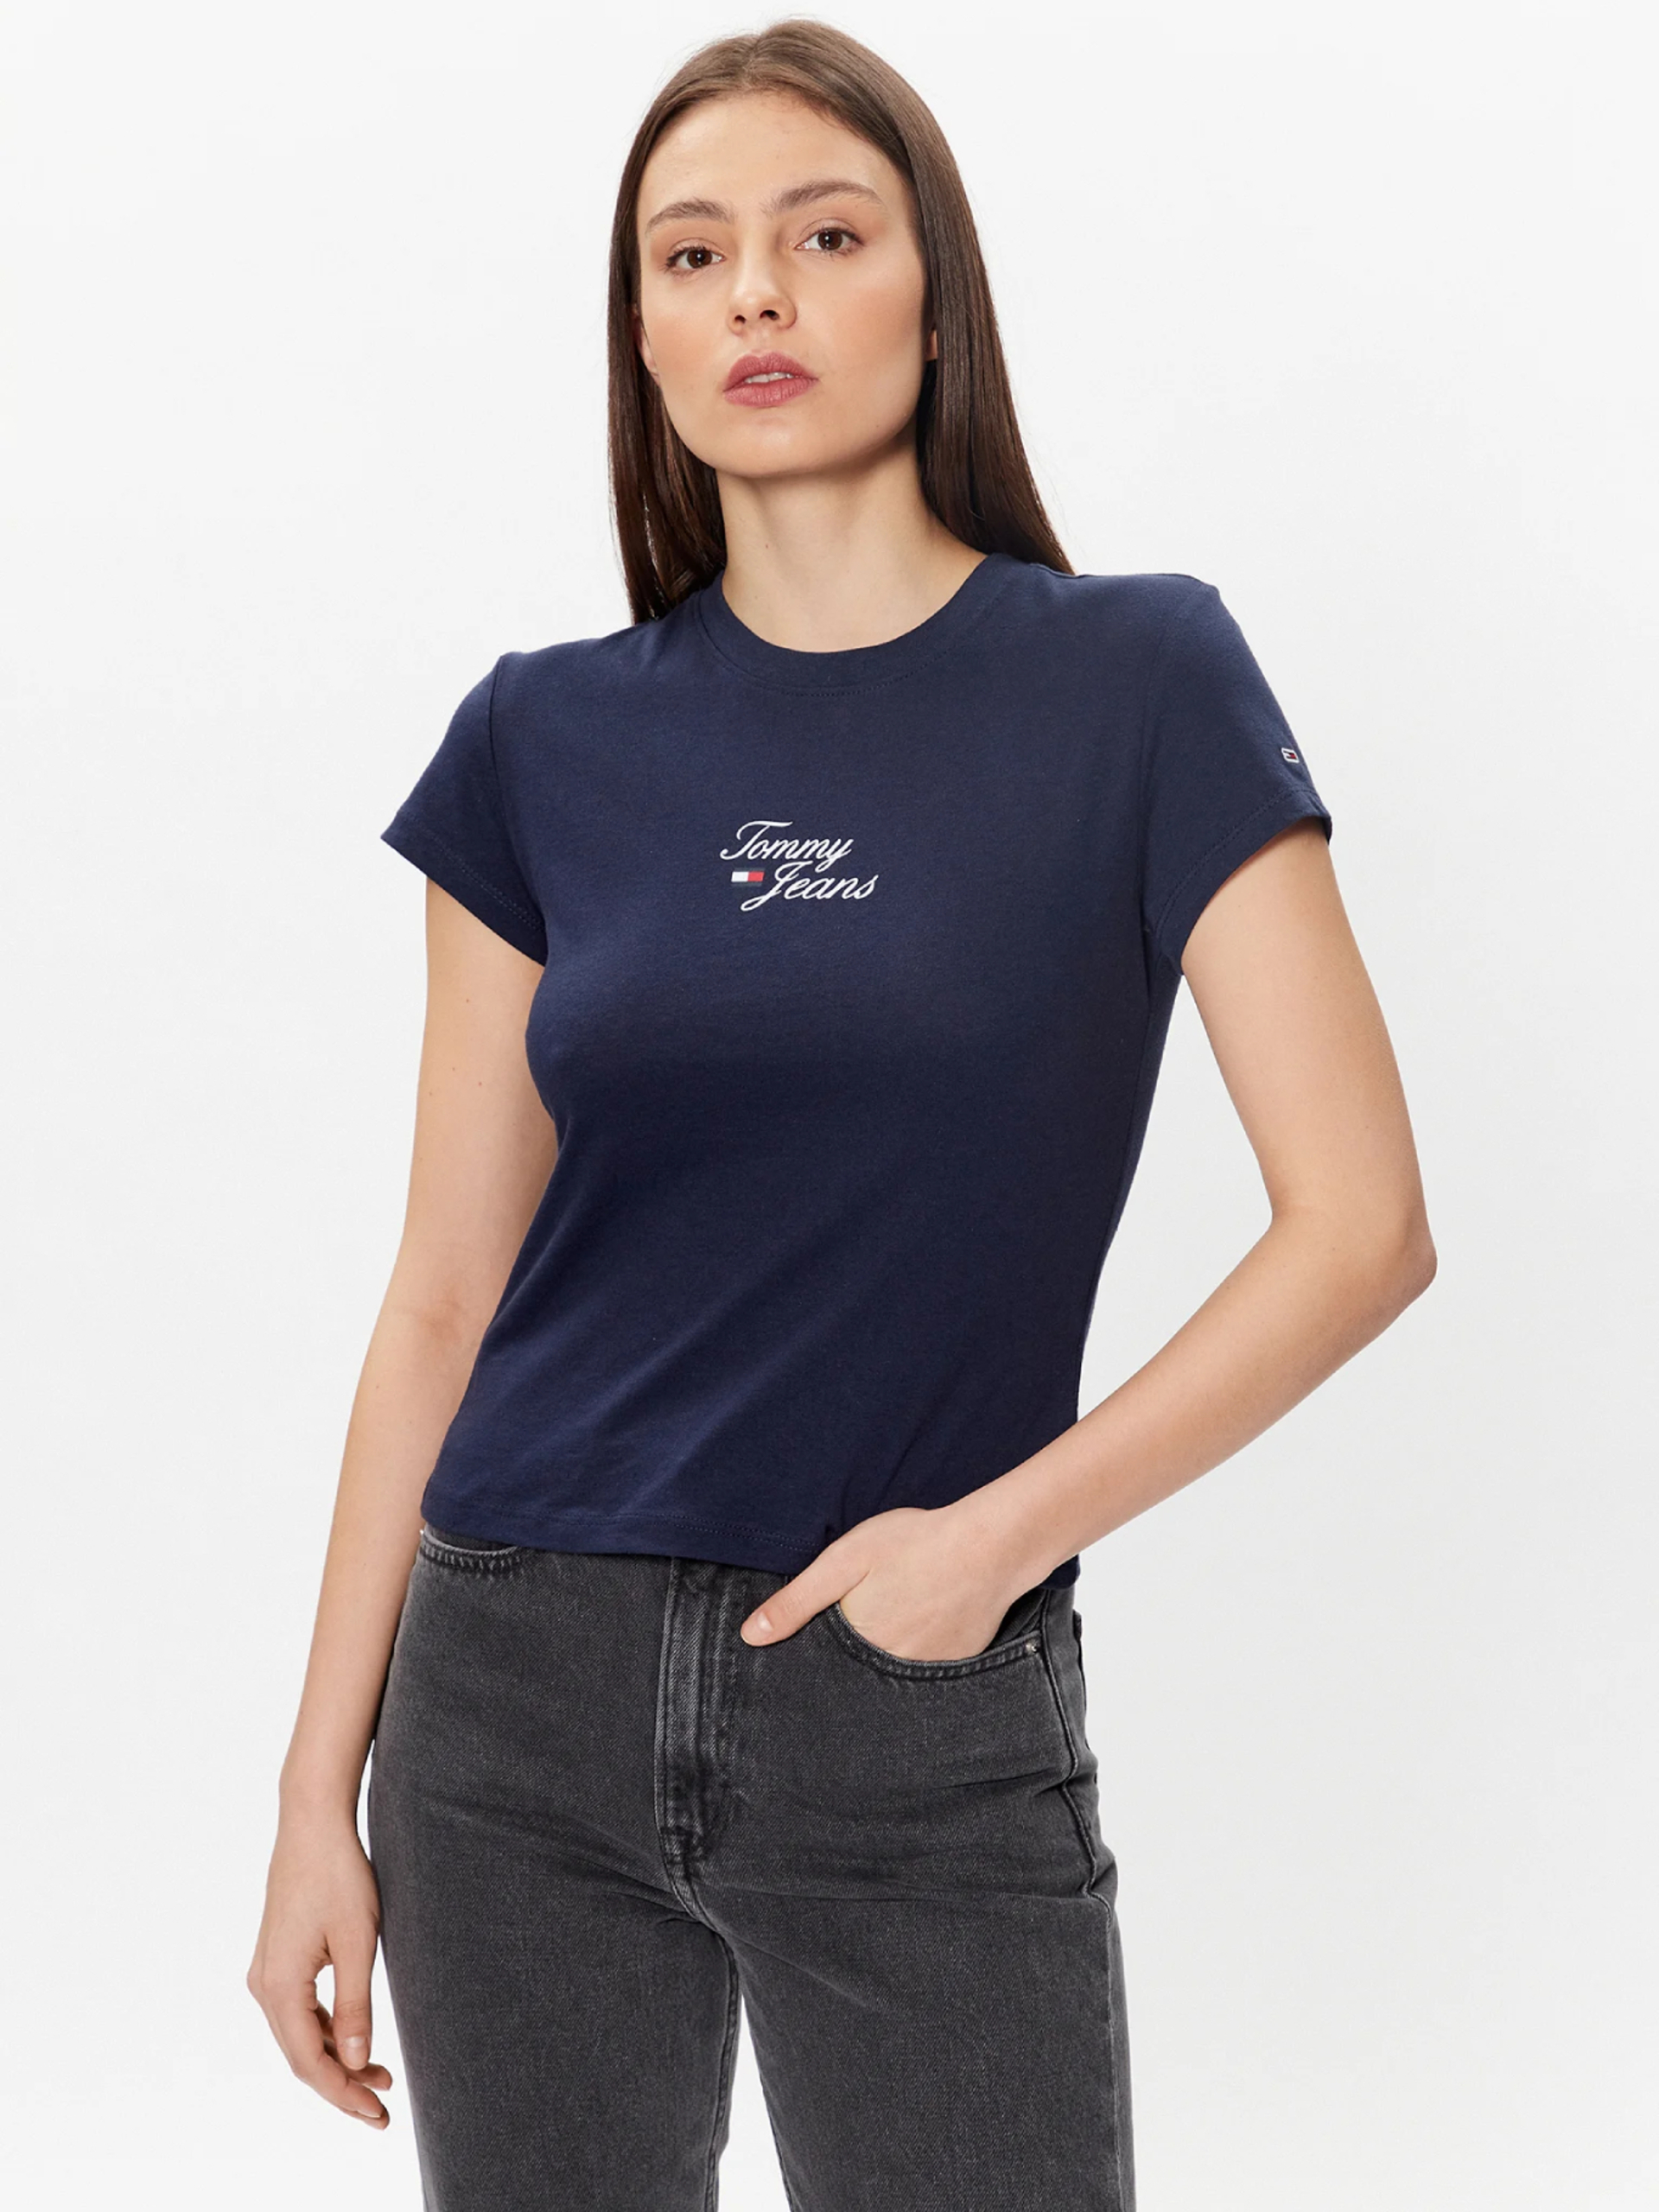 Tommy Jeans dámské tmavě modré tričko - XL (C87)